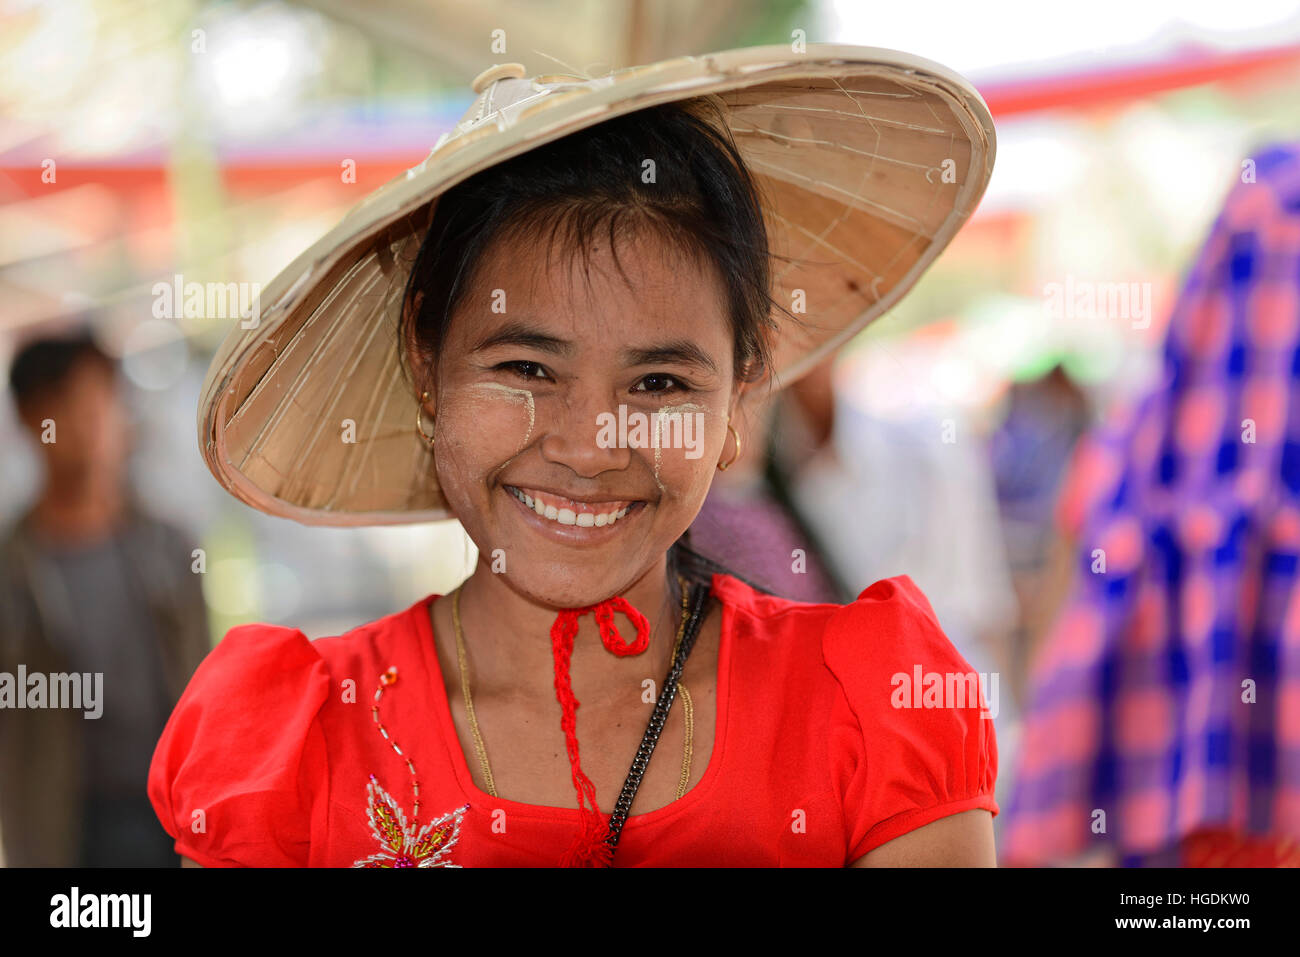 Frau mit Strohhut und Thanaka Paste im Gesicht, Lächeln, Mandalay, Myanmar Stockfoto